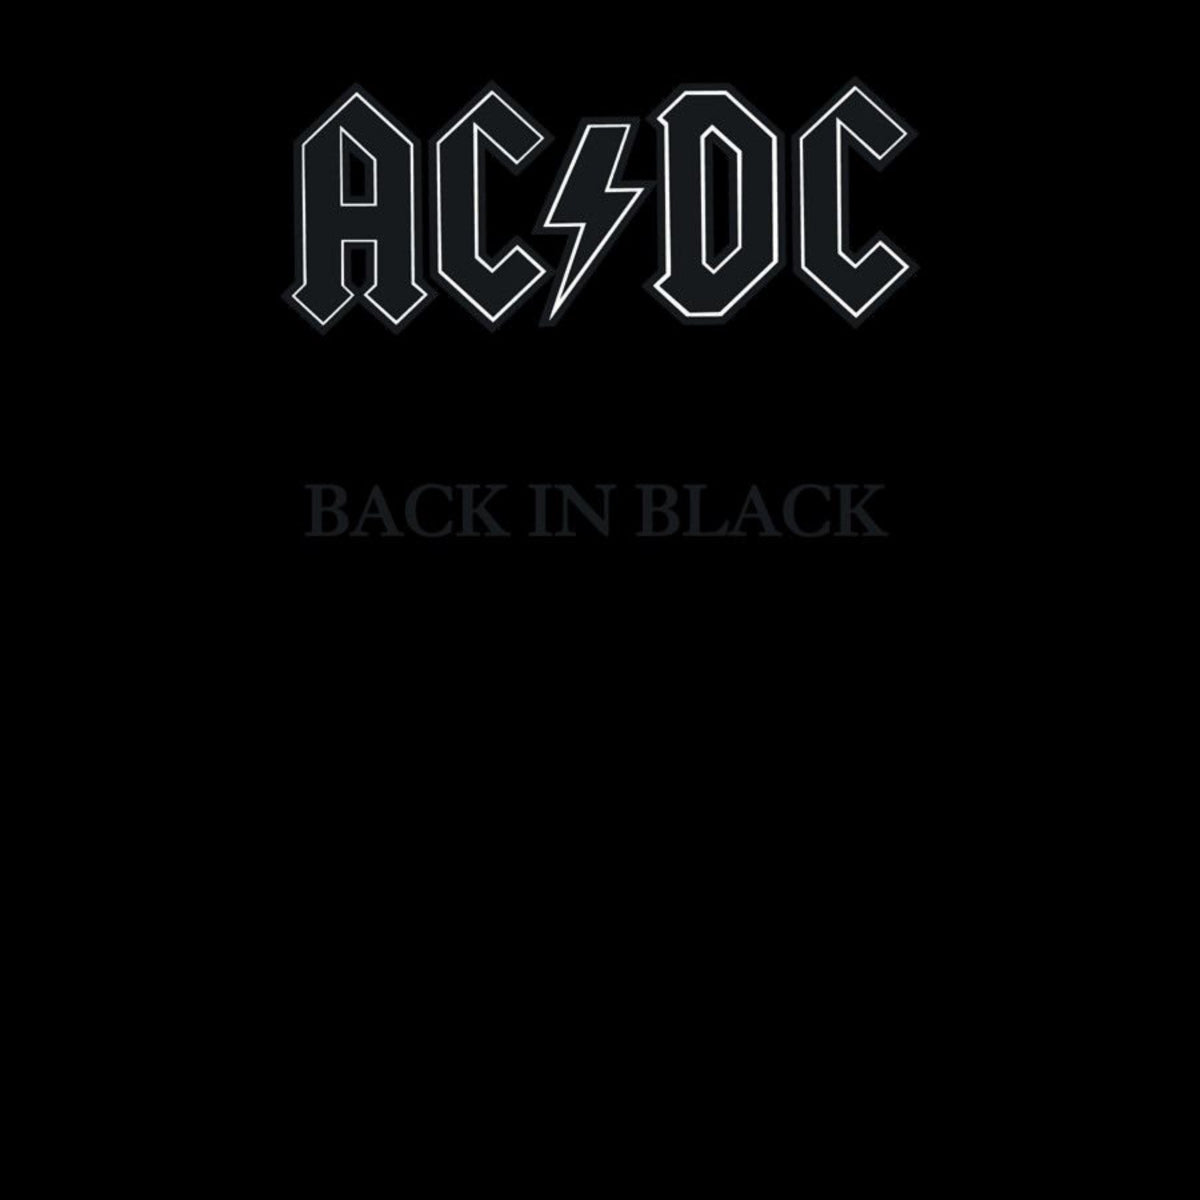 AC/DC Rock Or Bust Vinilo Holograma Edición Especial – Shopavia